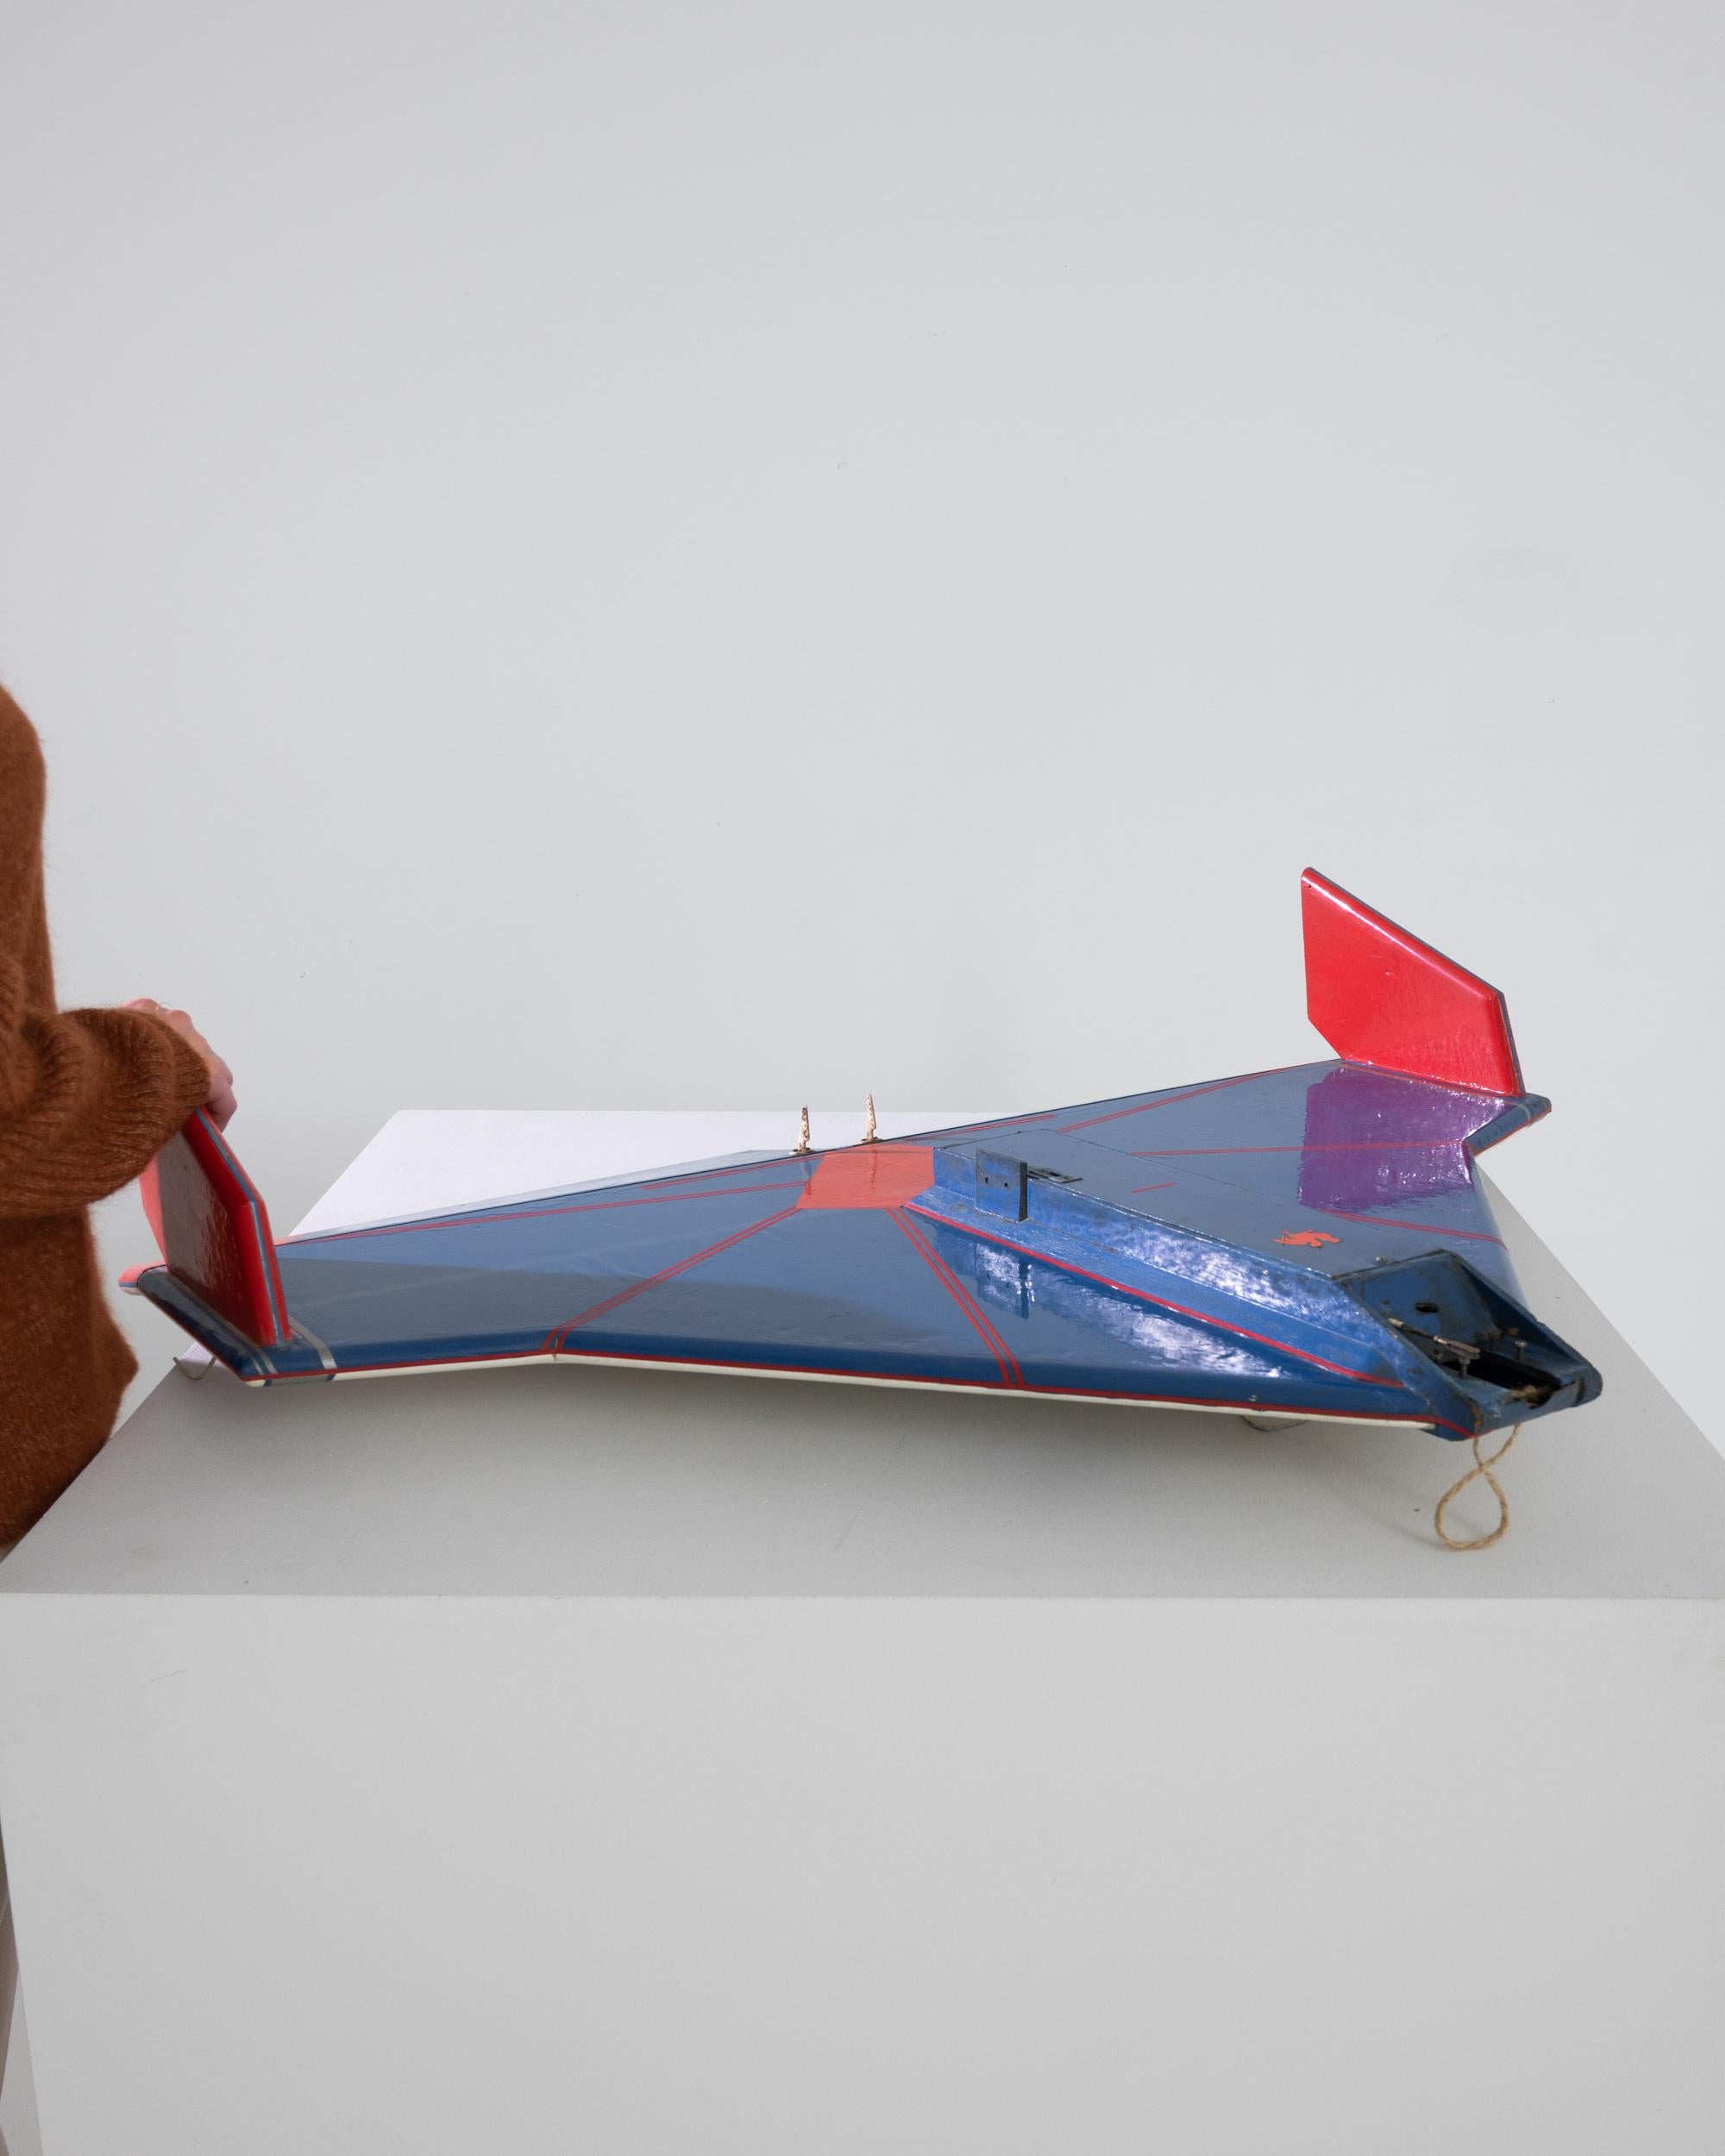 Cette maquette d'avion belge du XXe siècle est un objet de collection remarquable, qui capture l'esprit de l'aviation vintage avec son corps bleu frappant et ses accents rouges audacieux. Fabriqué avec une attention méticuleuse aux détails, l'avion